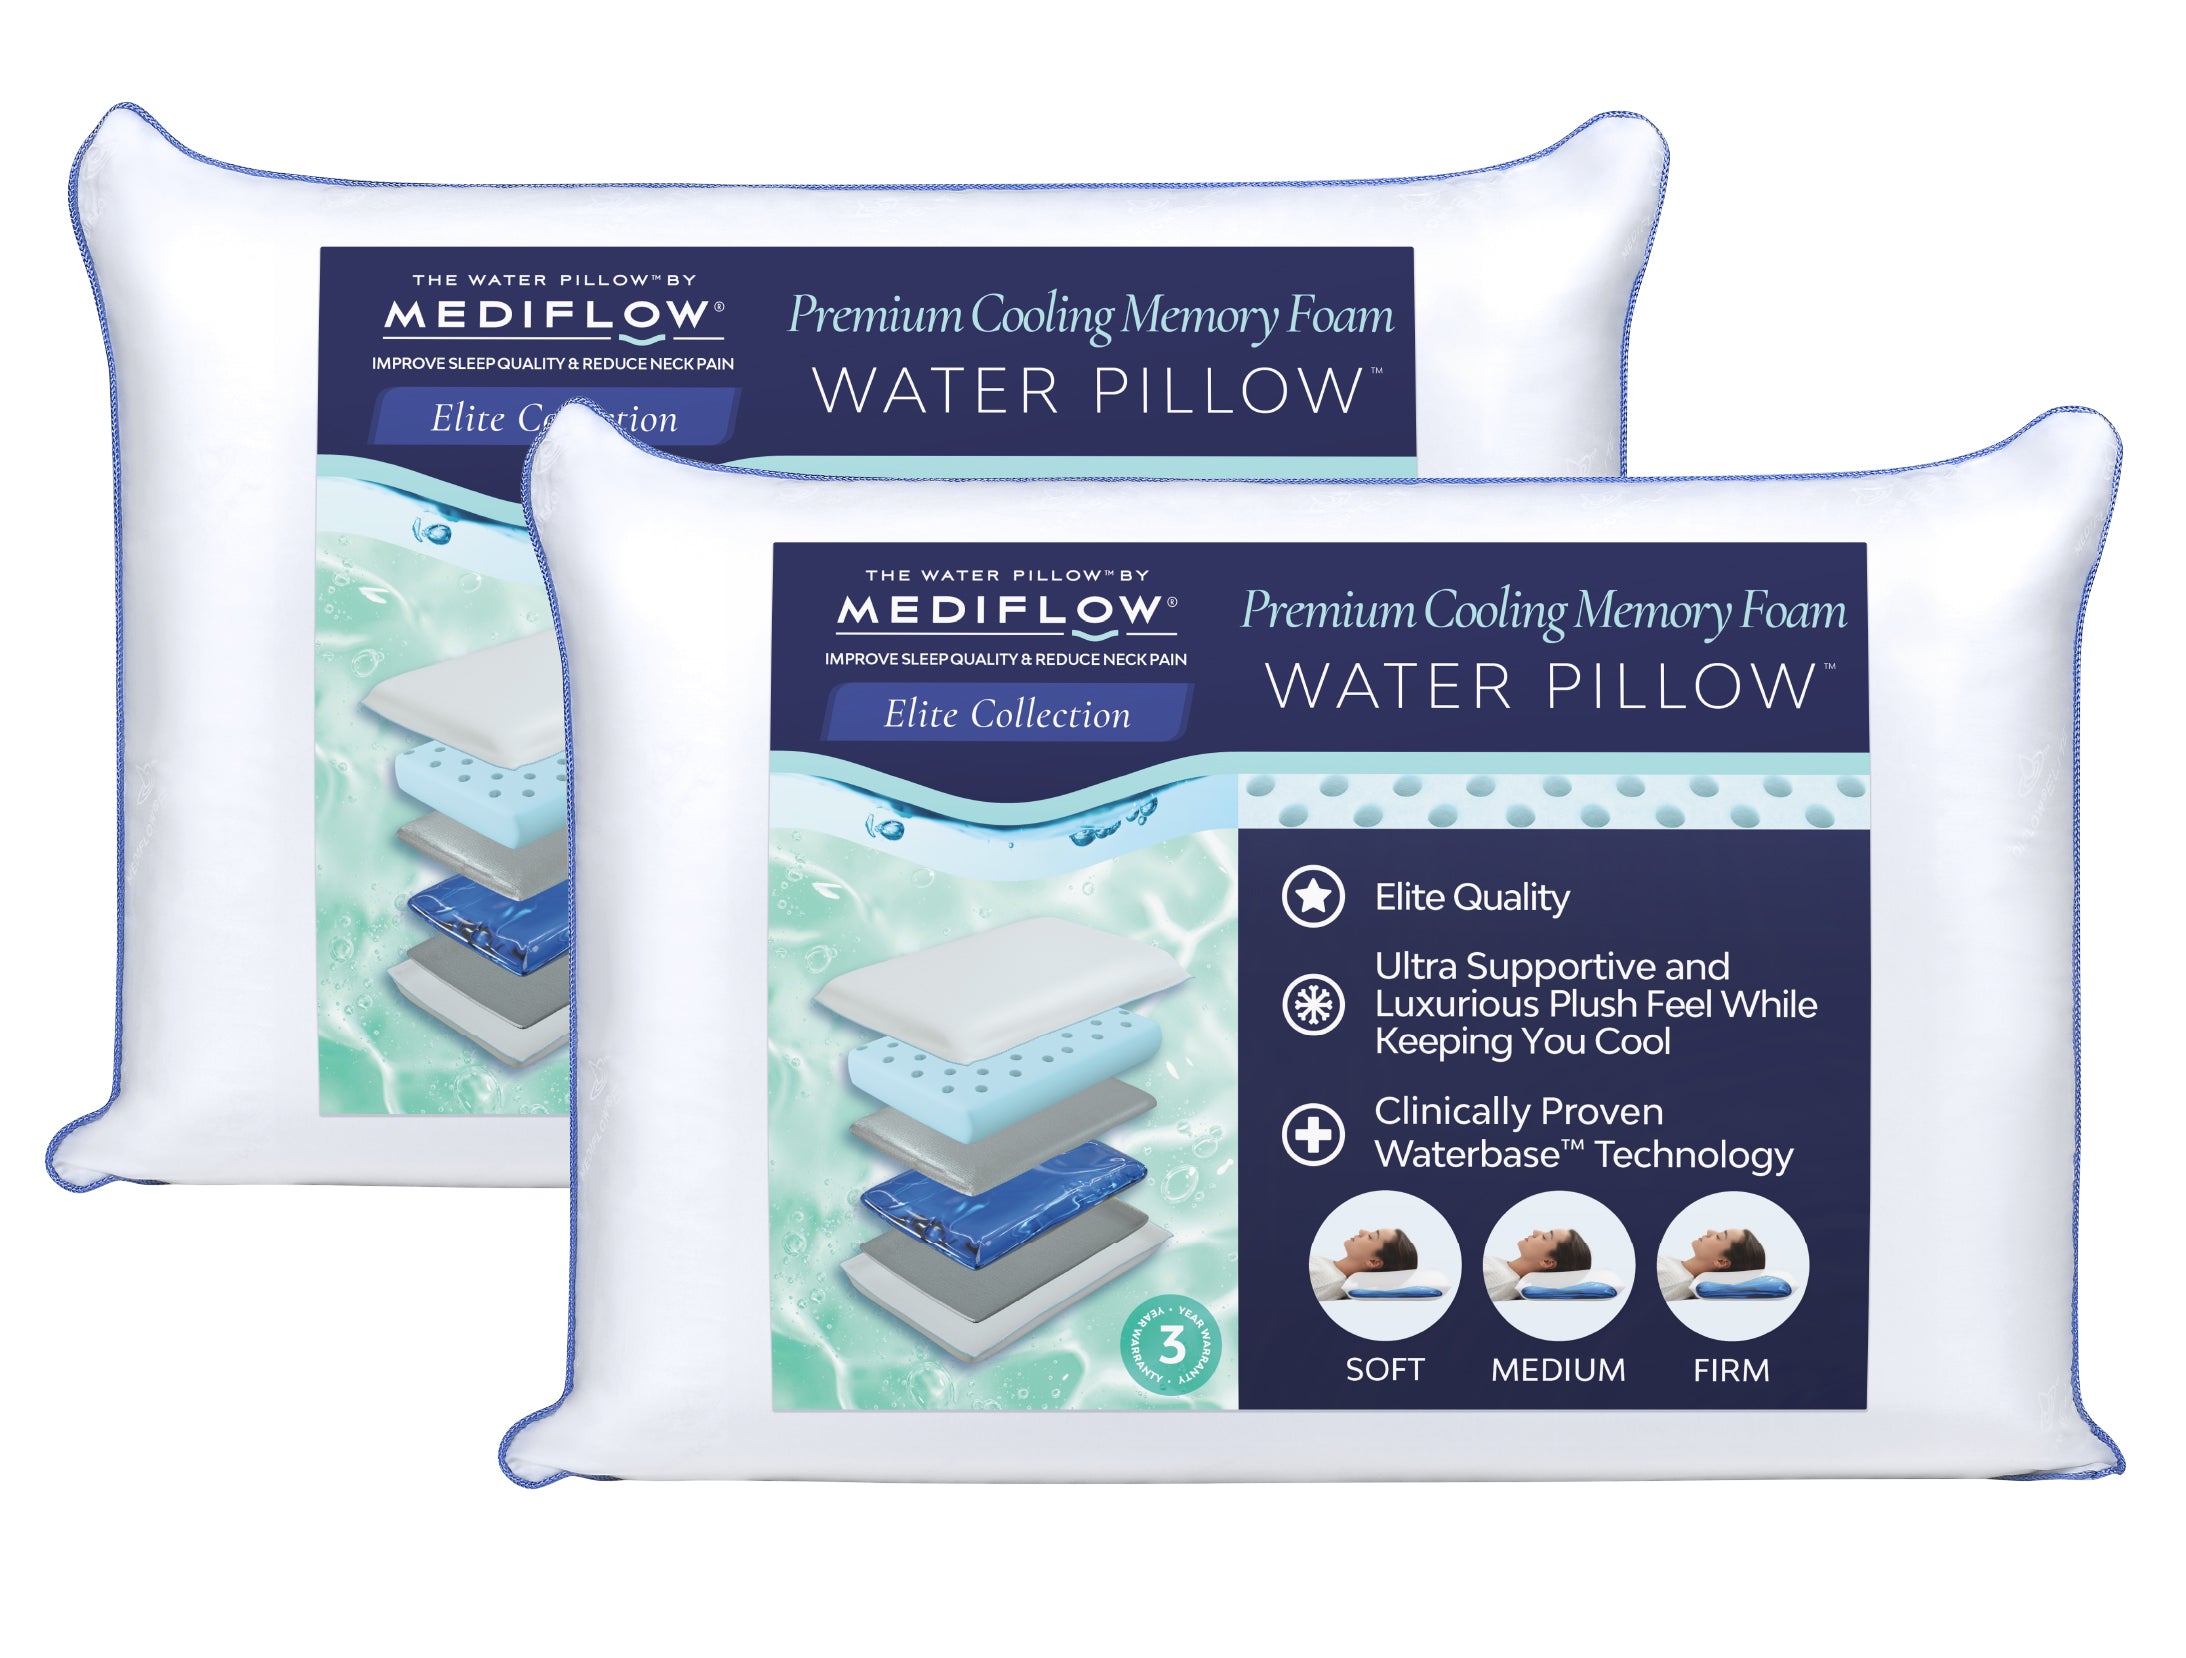 Elite Cooling Memory Foam Water Pillow